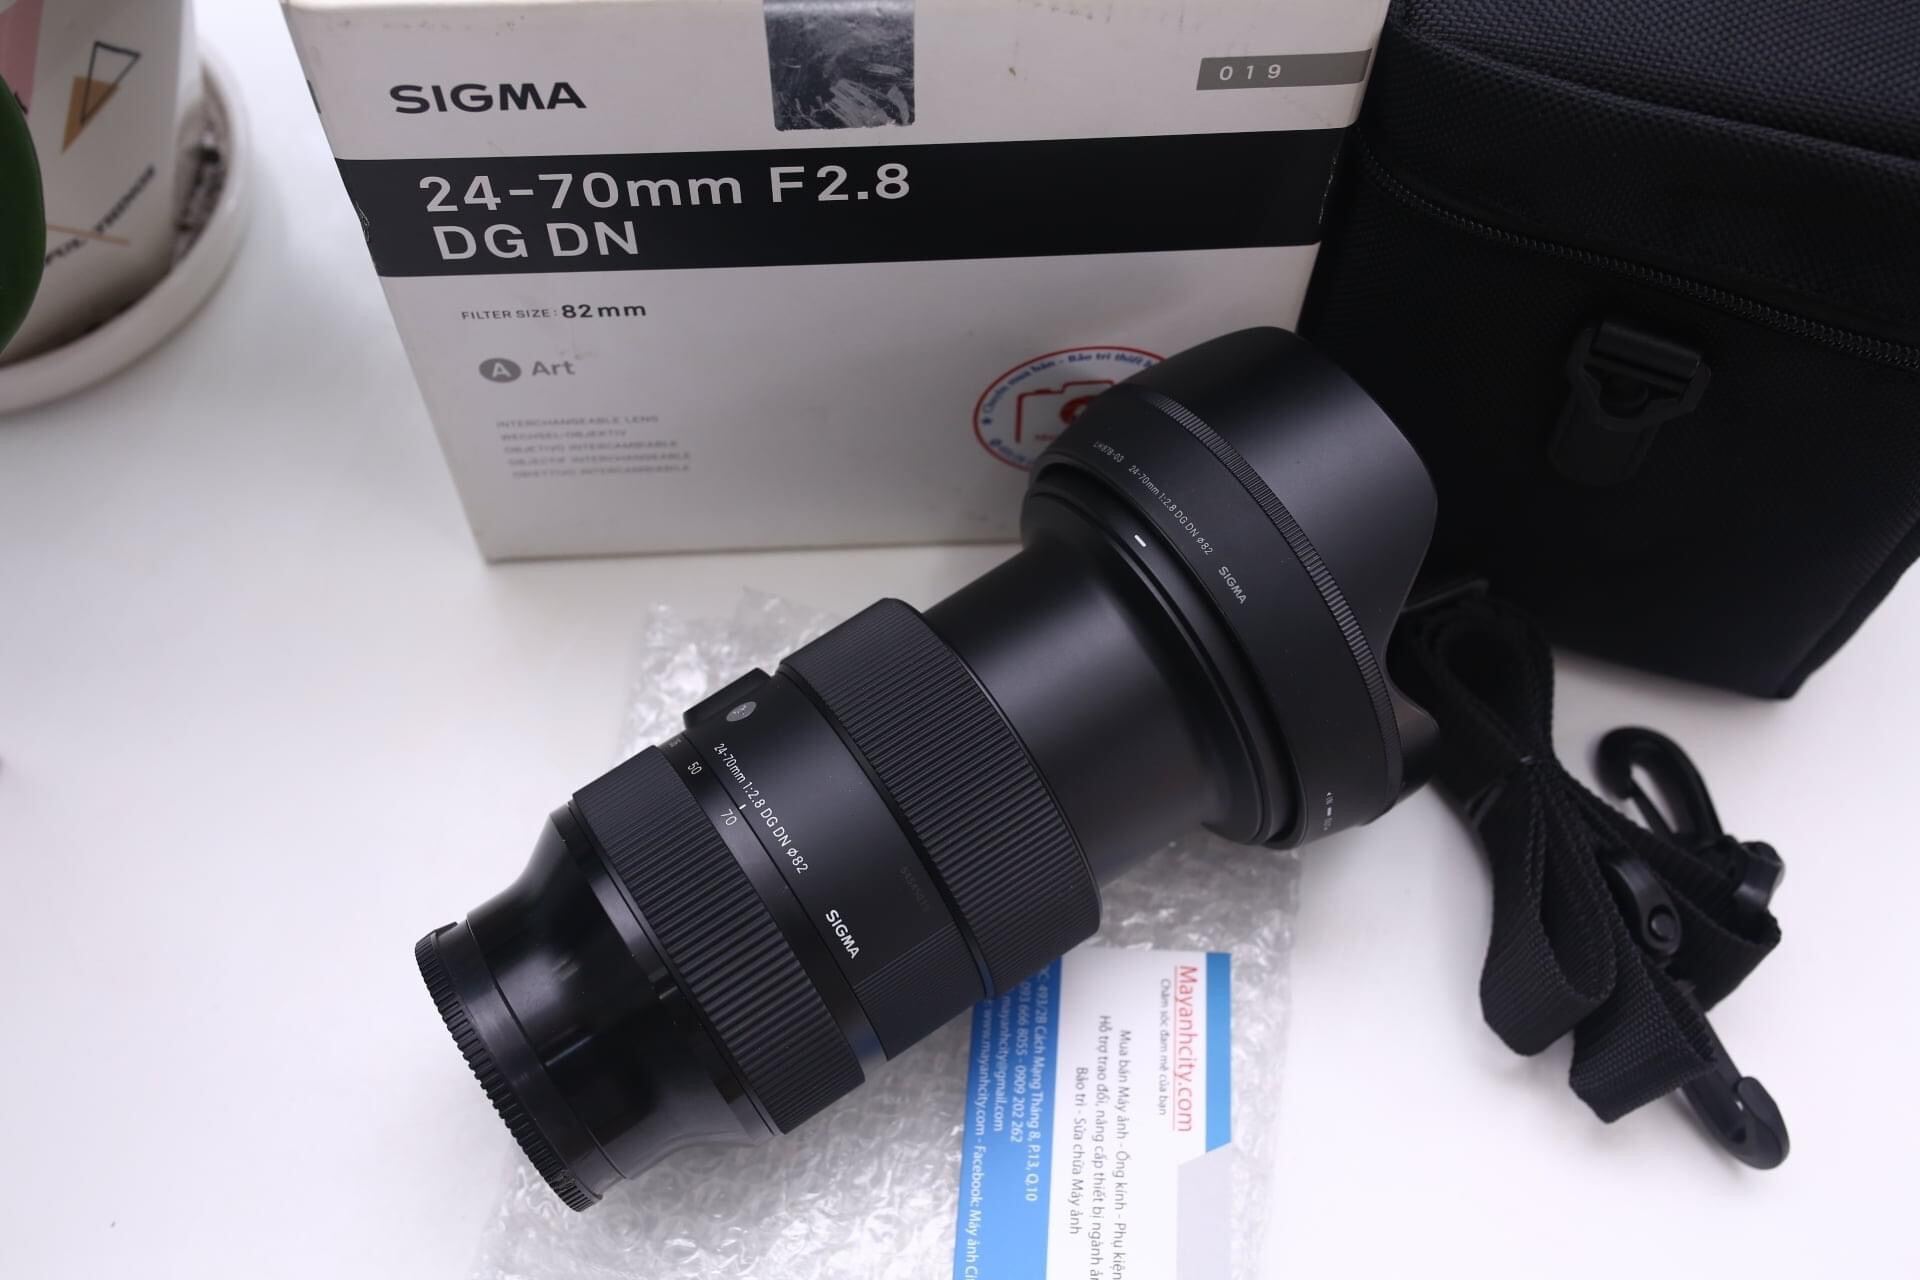 Ống kính Sigma 24-70mm F2.8 Art For Sony | Lazada.vn: Khả năng chụp hình chuyên nghiệp sẽ hoàn hảo hơn khi sử dụng ống kính Sigma 24-70mm F2.8 Art For Sony. Với khả năng zoom ống kính và độ phân giải ảnh cao, bạn sẽ thấy sự khác biệt đáng kể giữa những bức ảnh chụp bằng ống kính này và những bức ảnh chụp bằng ống kính khác.